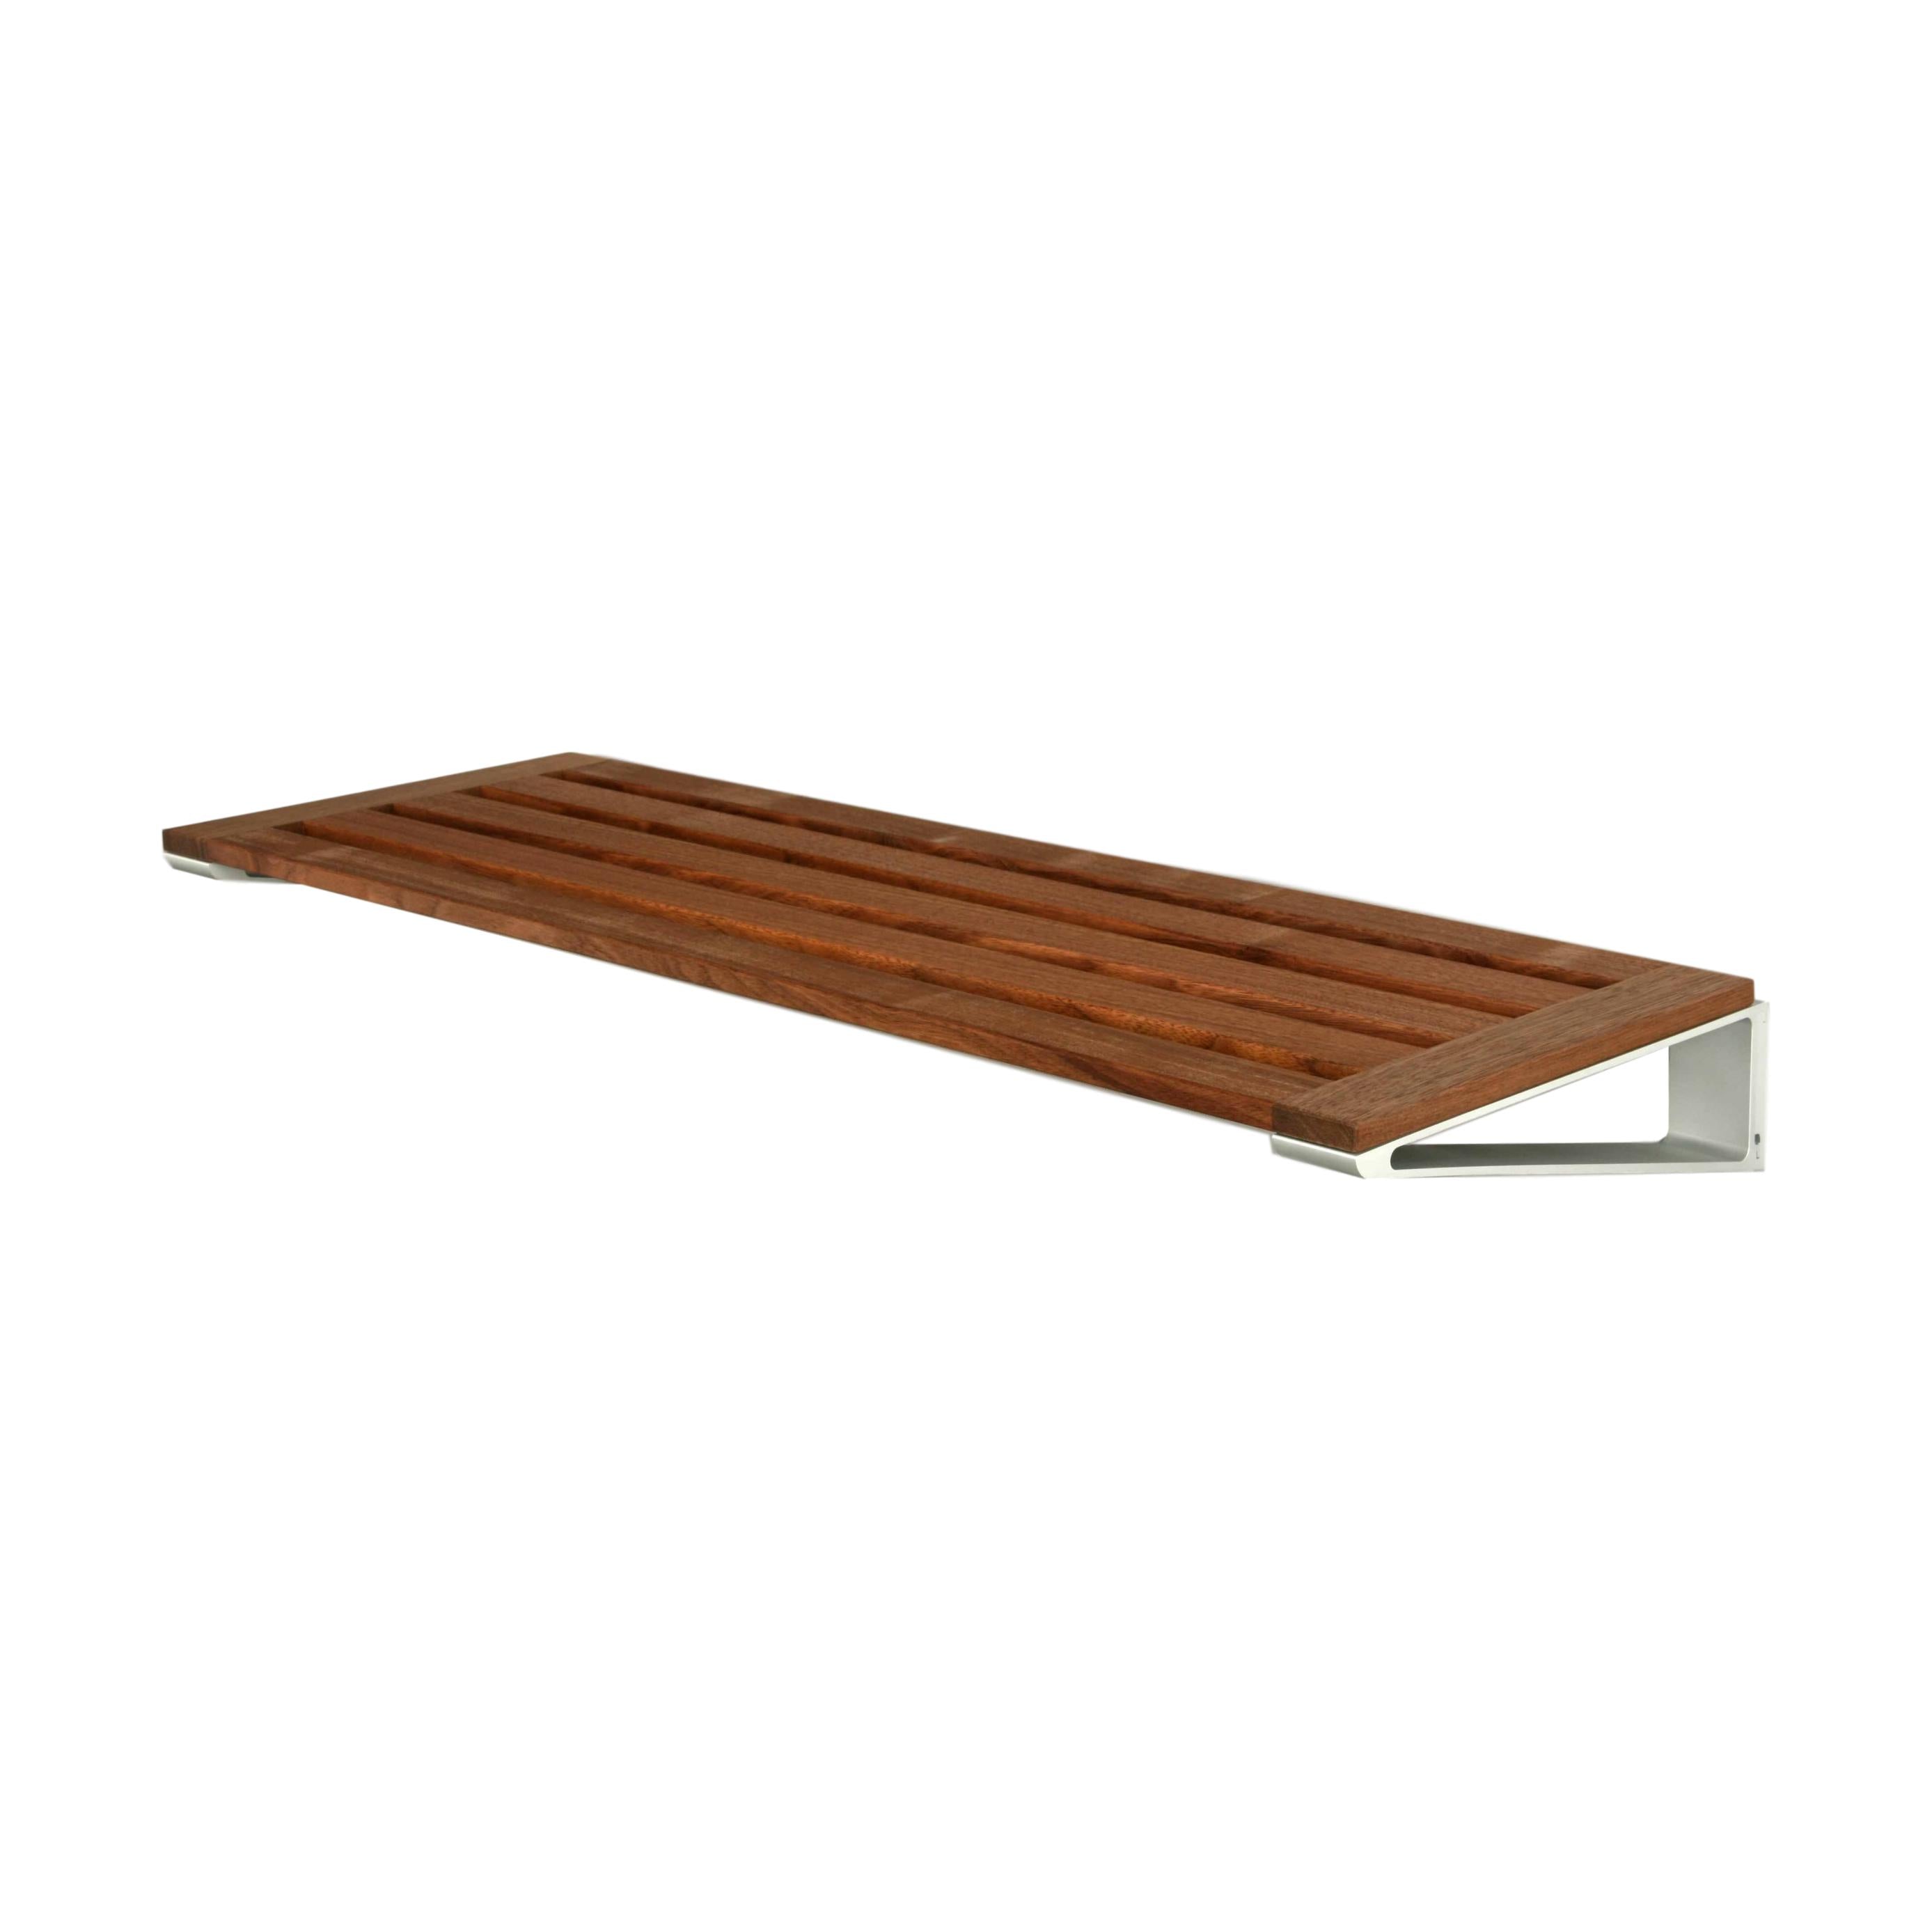 Loca Knaxsko rack 40 cm, valnöt/aluminium